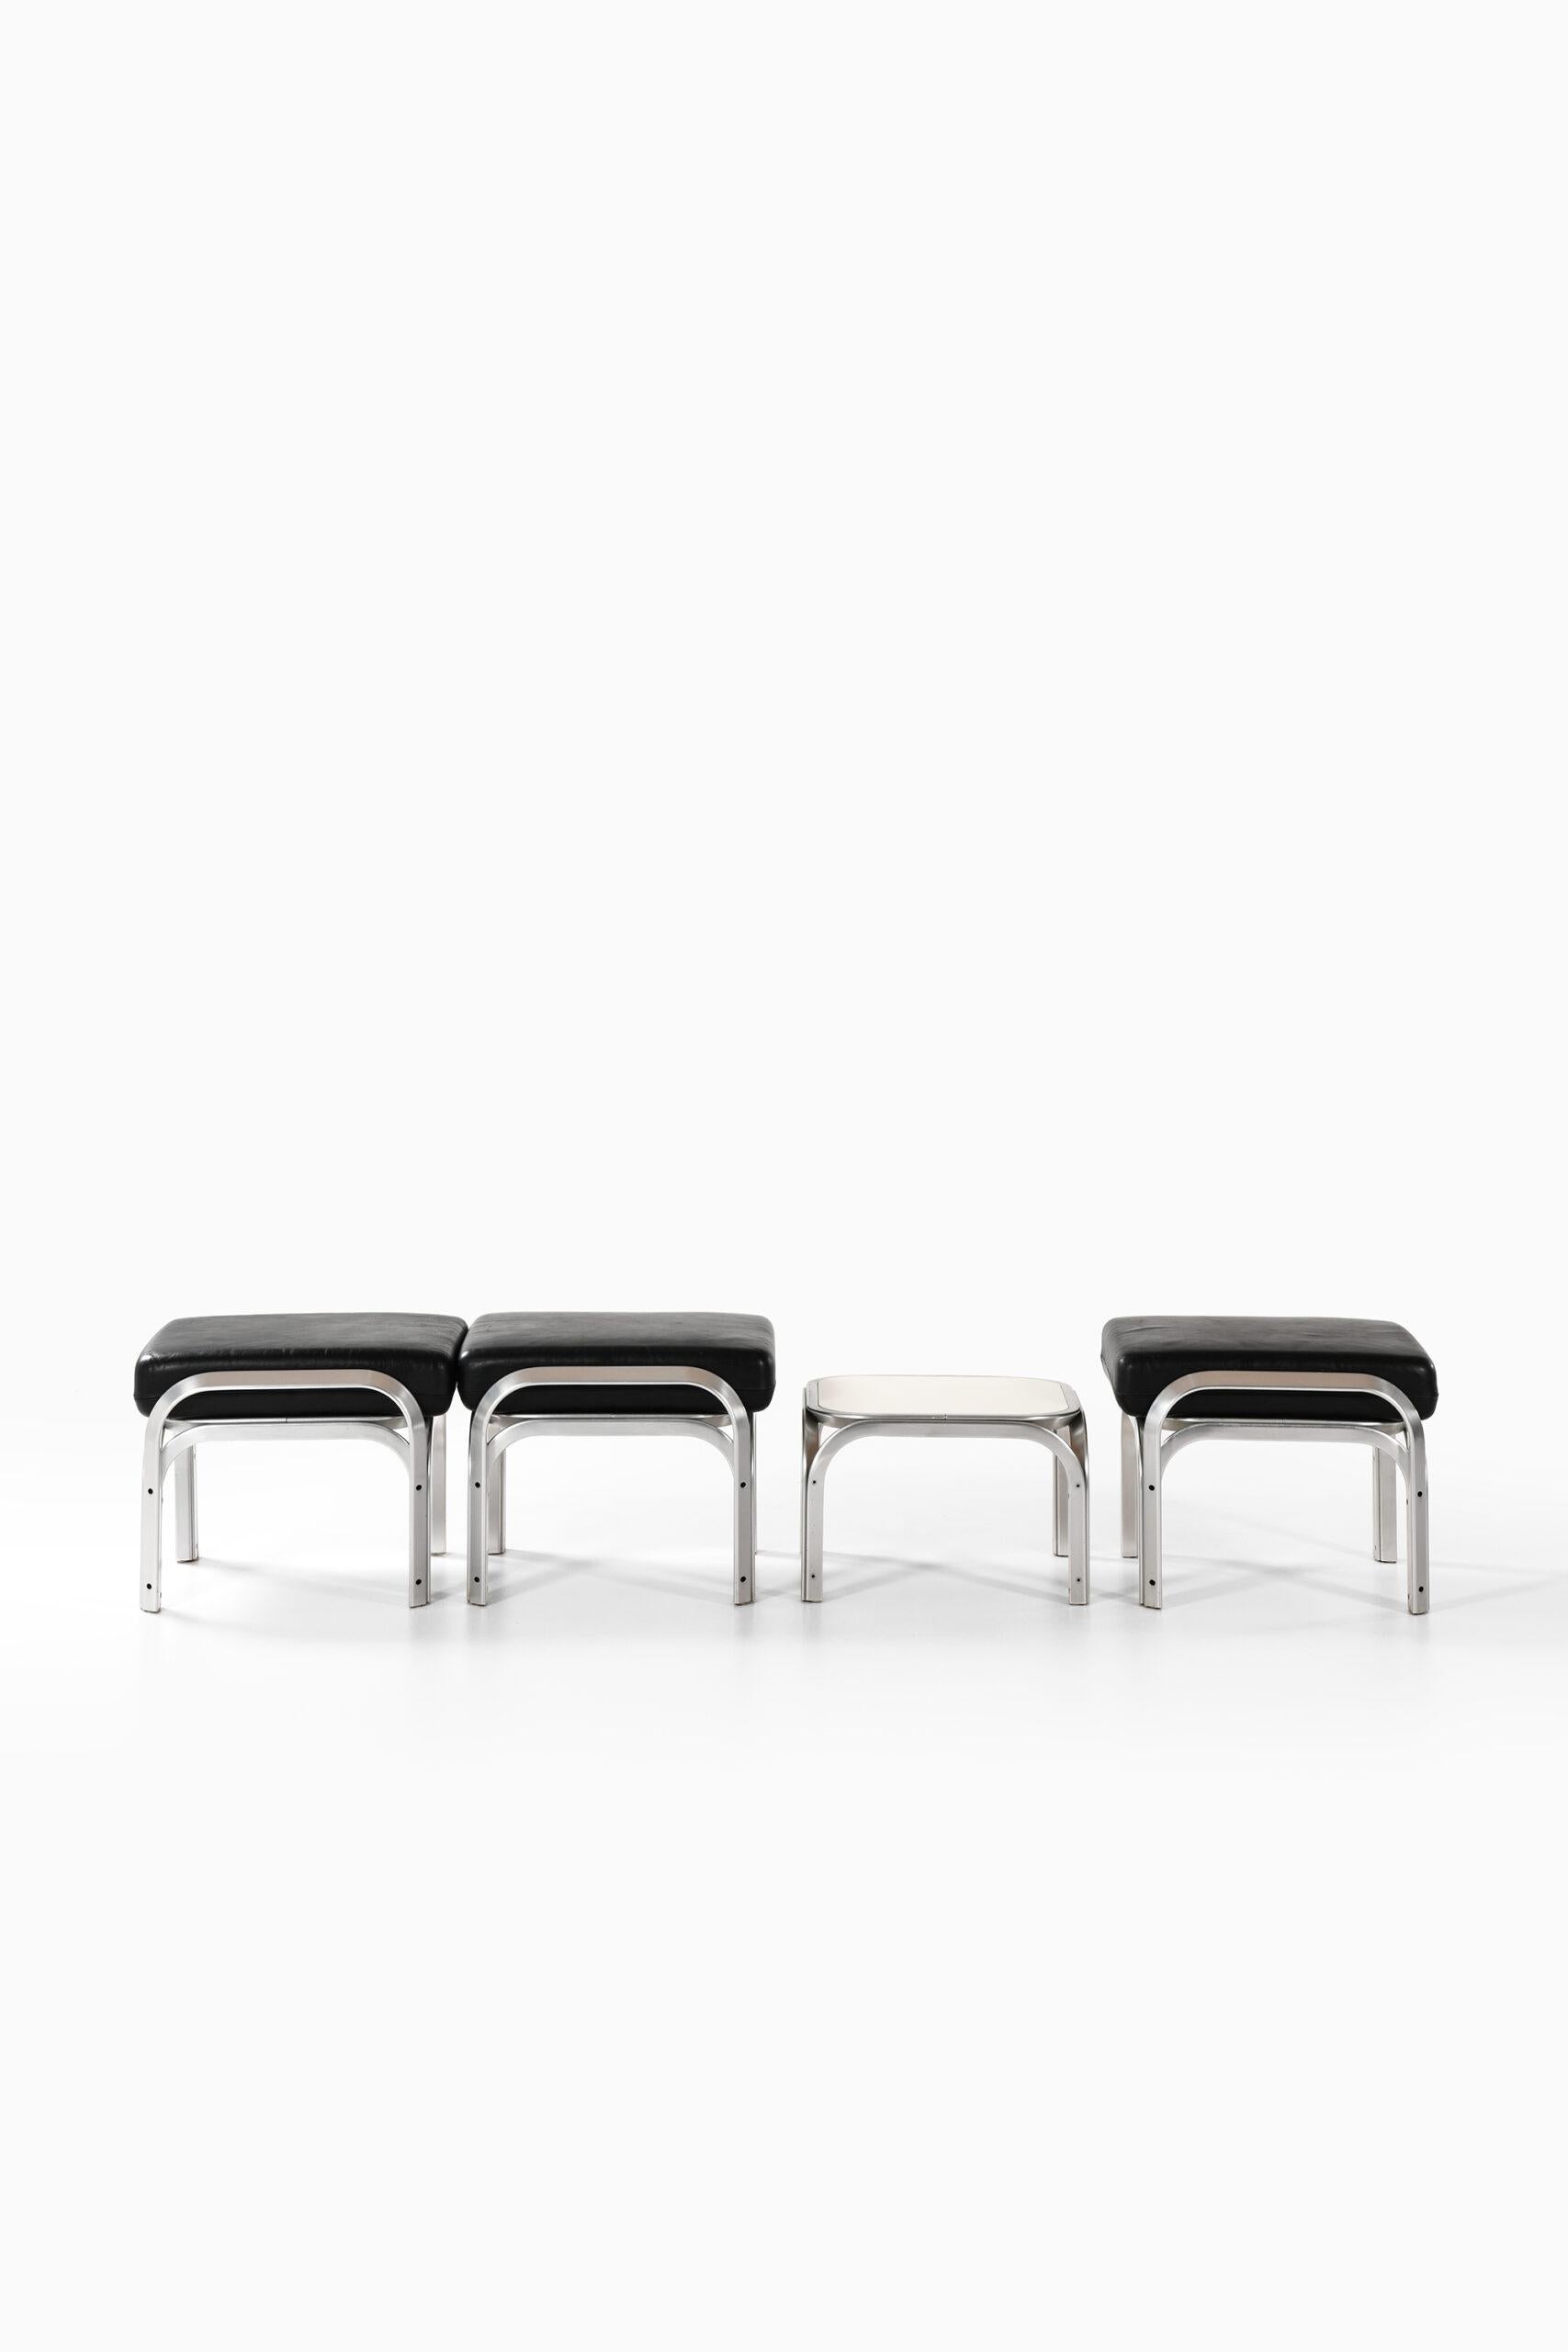 Sehr seltene Sitzgruppe bestehend aus 3 Hockern und Tisch, entworfen von Jørn Utzon. Produziert von Fritz Hansen in Dänemark.
Abmessungen Hocker: (B x T x H): 56 x 56 x 44 cm.
Abmessungen Tisch: (B x T x H): 50 x 50 x 32 cm.